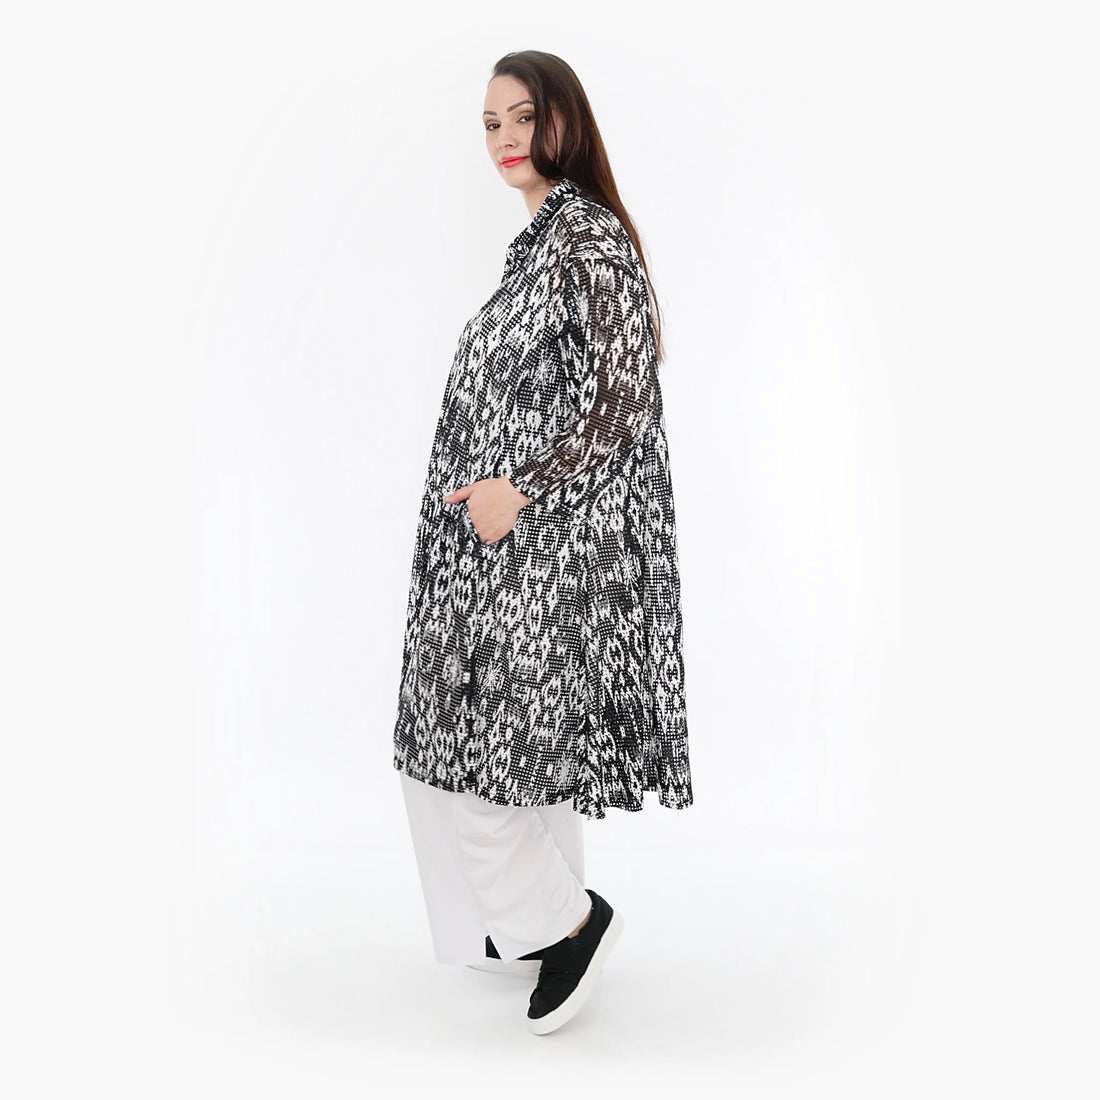 A-Form Jacke von AKH Fashion aus Viskose, 1324.06606, Schwarz-Weiß, Batik, Schick, Modern